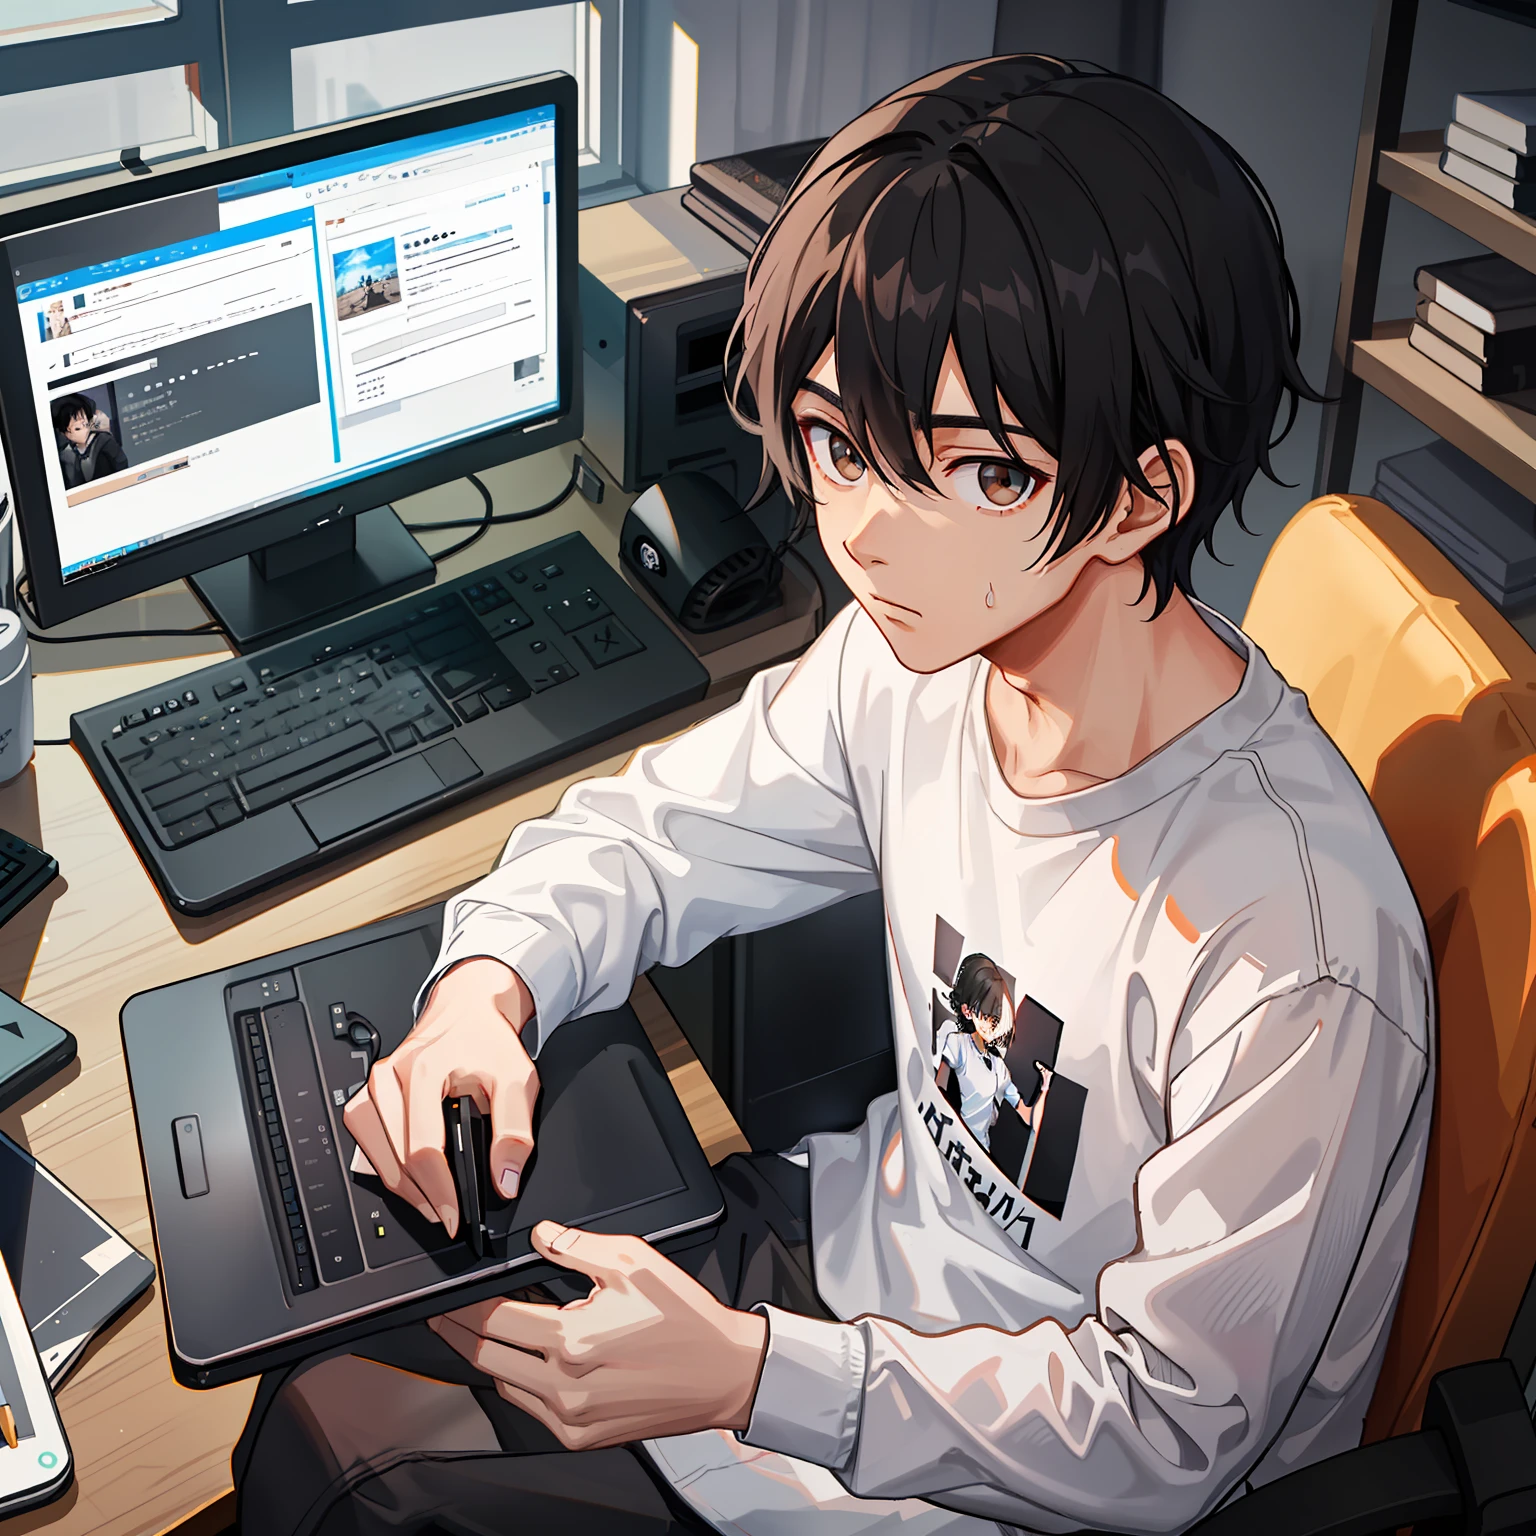 "Um menino com cabelo preto curto e ondulado，Use camisa branca e calça de moletom preta，sentado na frente do computador，olhos castanhos escuros。